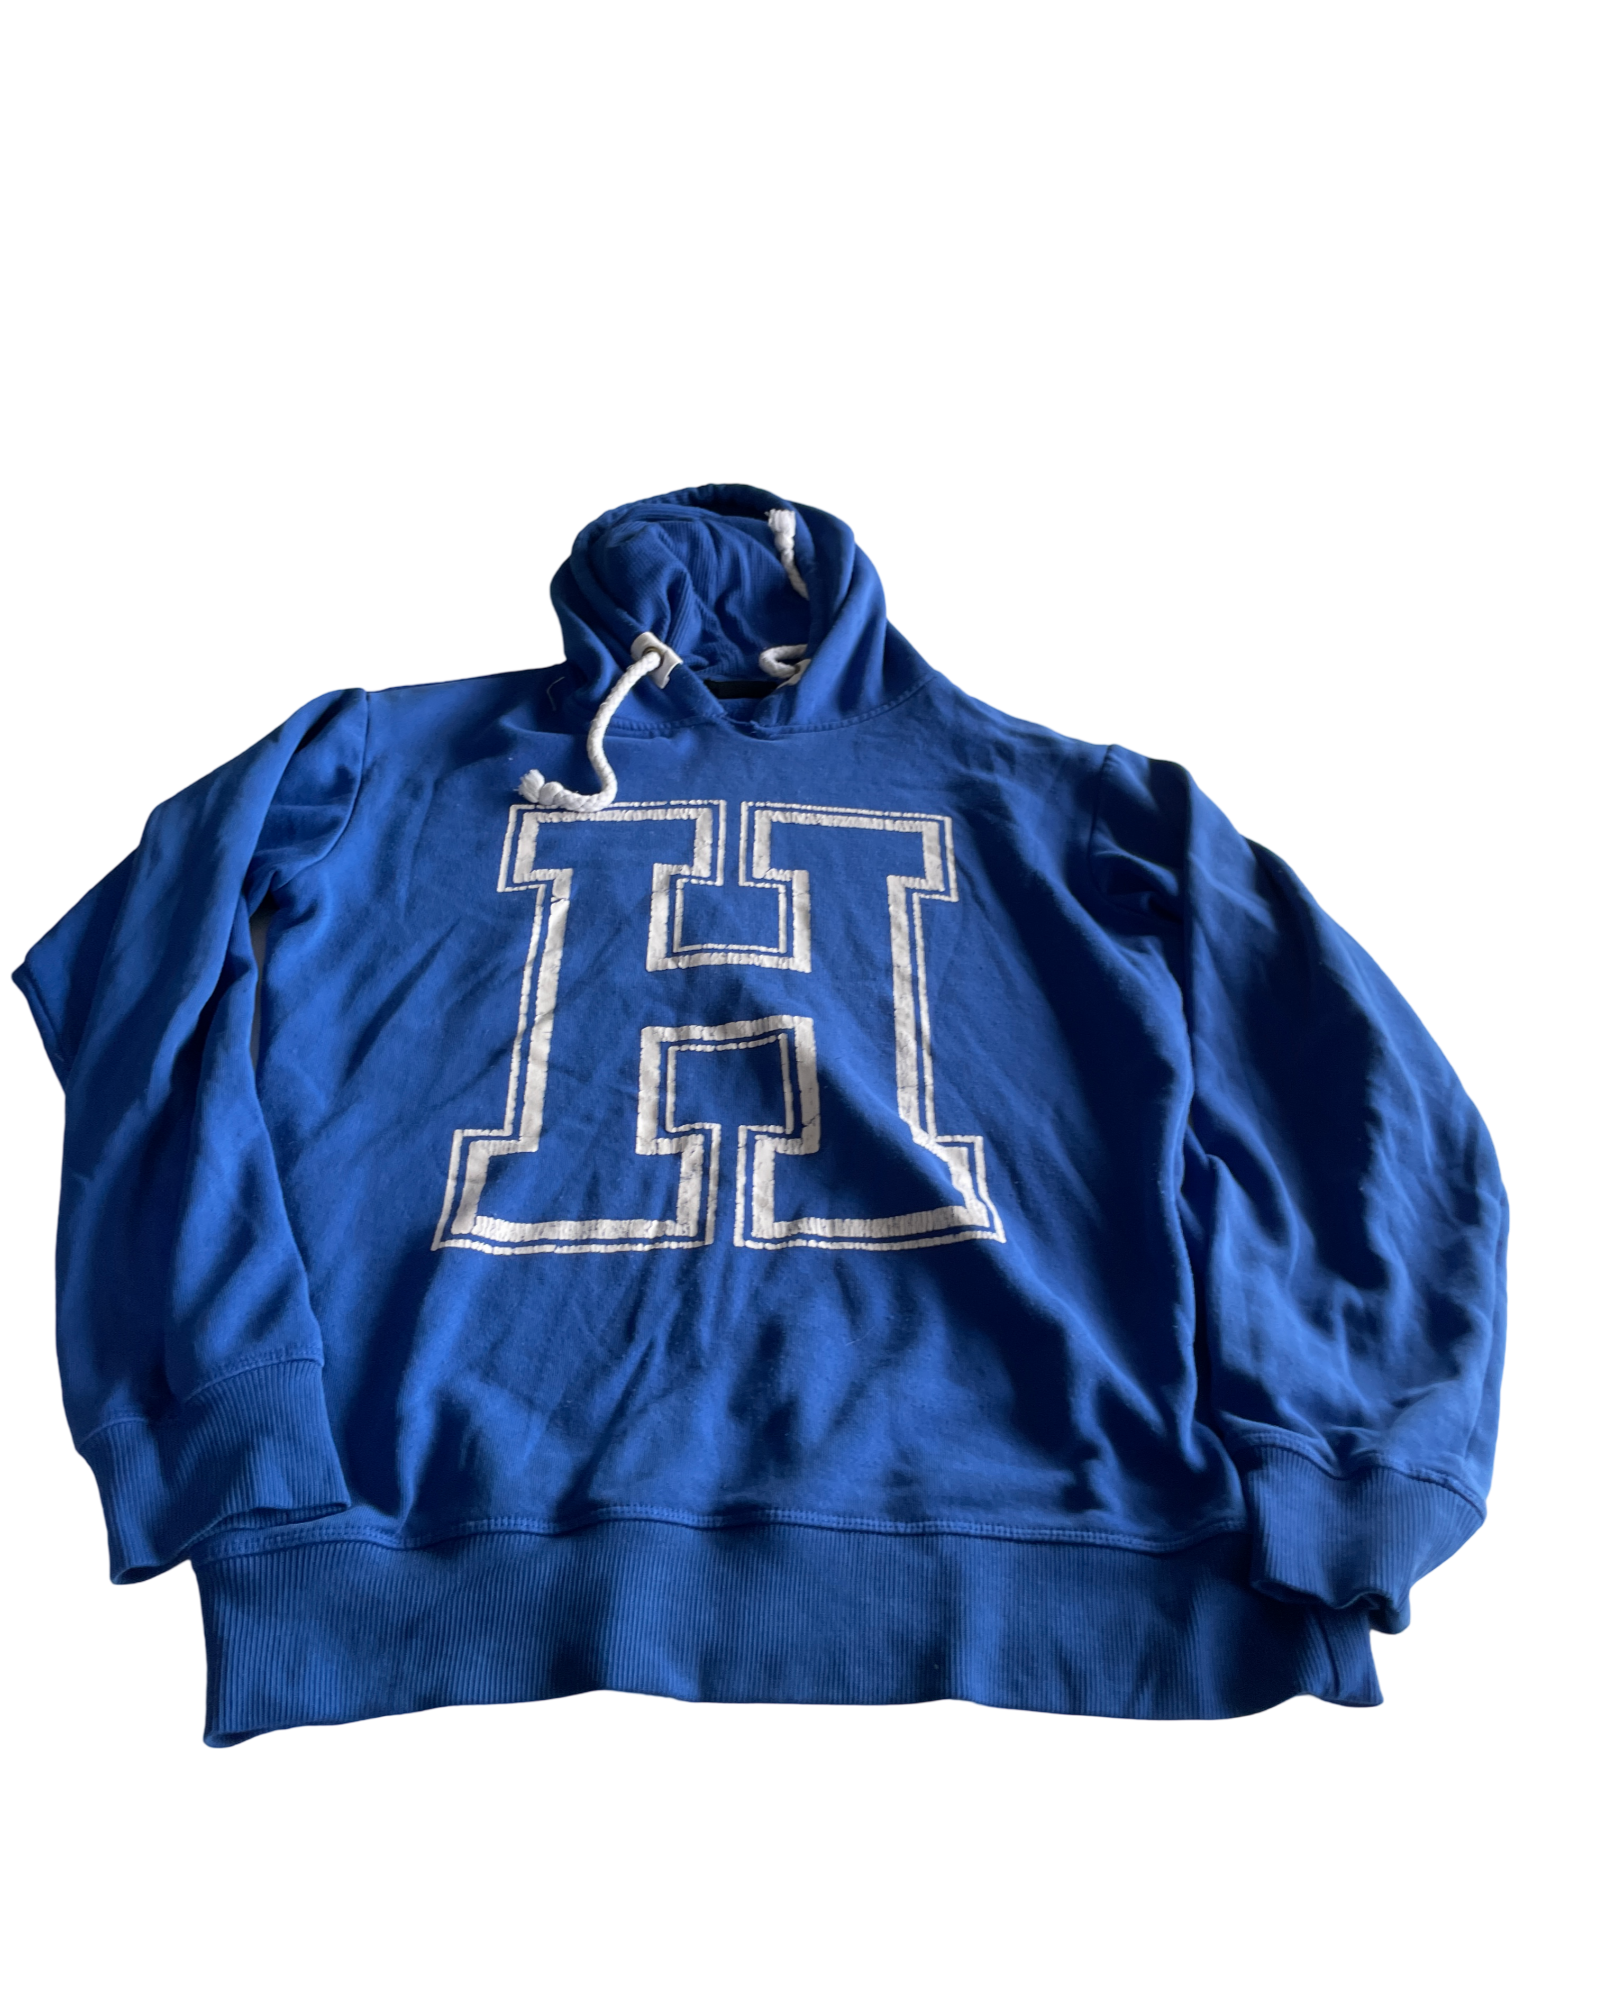 Vintage 2000s FBSN Hoodie Sweatshirt - Blue, Size M (SKU 4620)